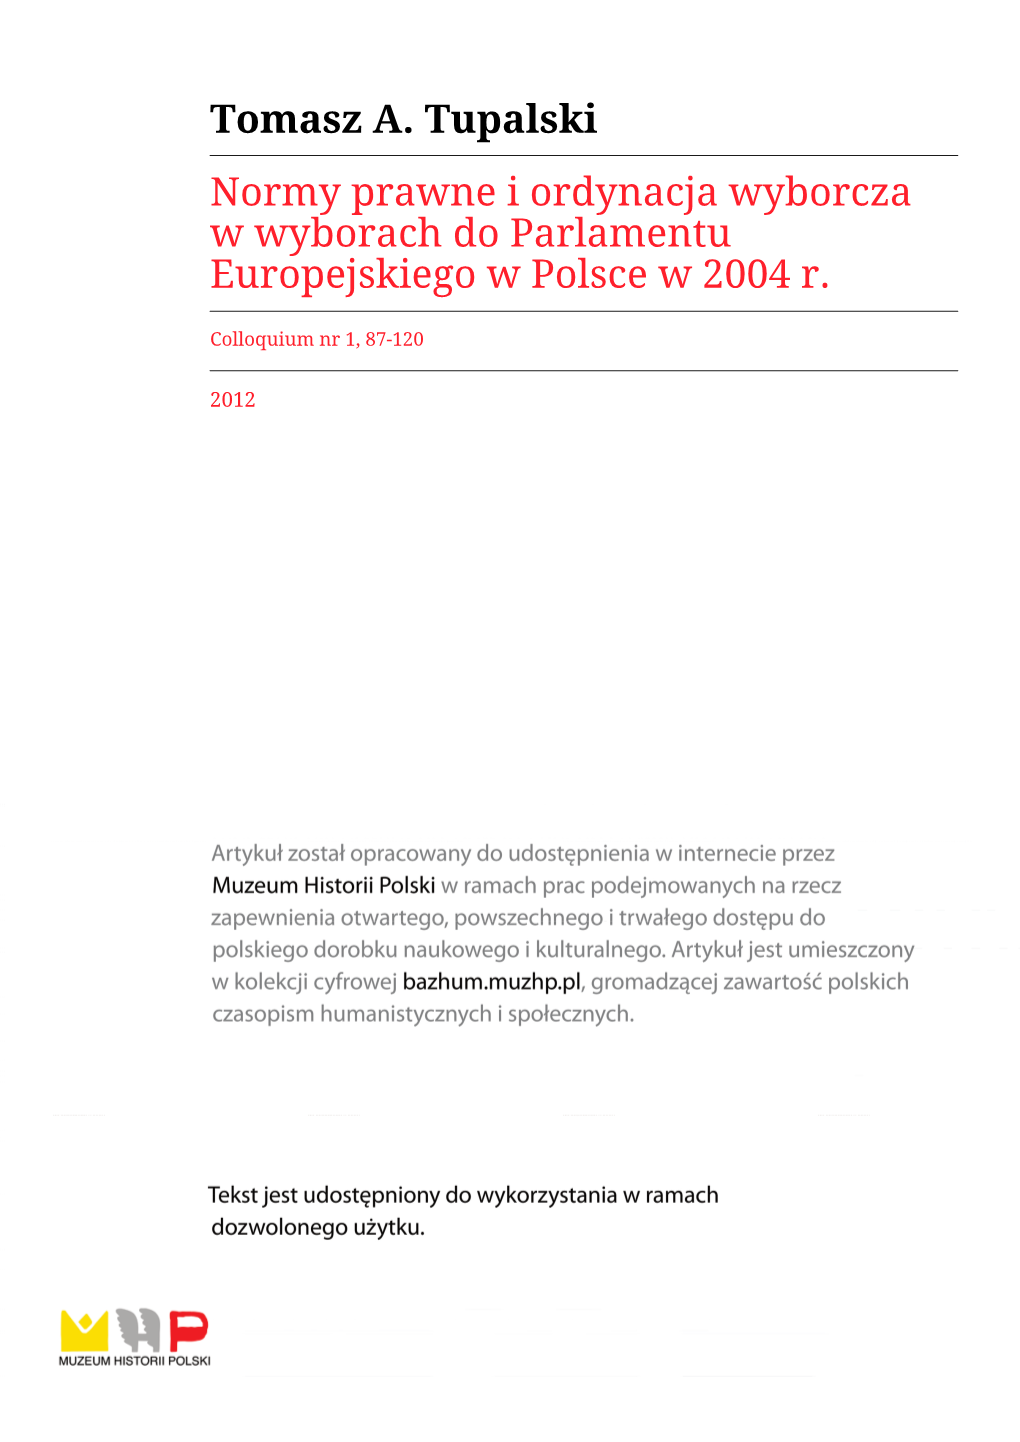 Normy Prawne I Ordynacja Wyborcza W Wyborach Do Parlamentu Europejskiego W Polsce W 2004 R